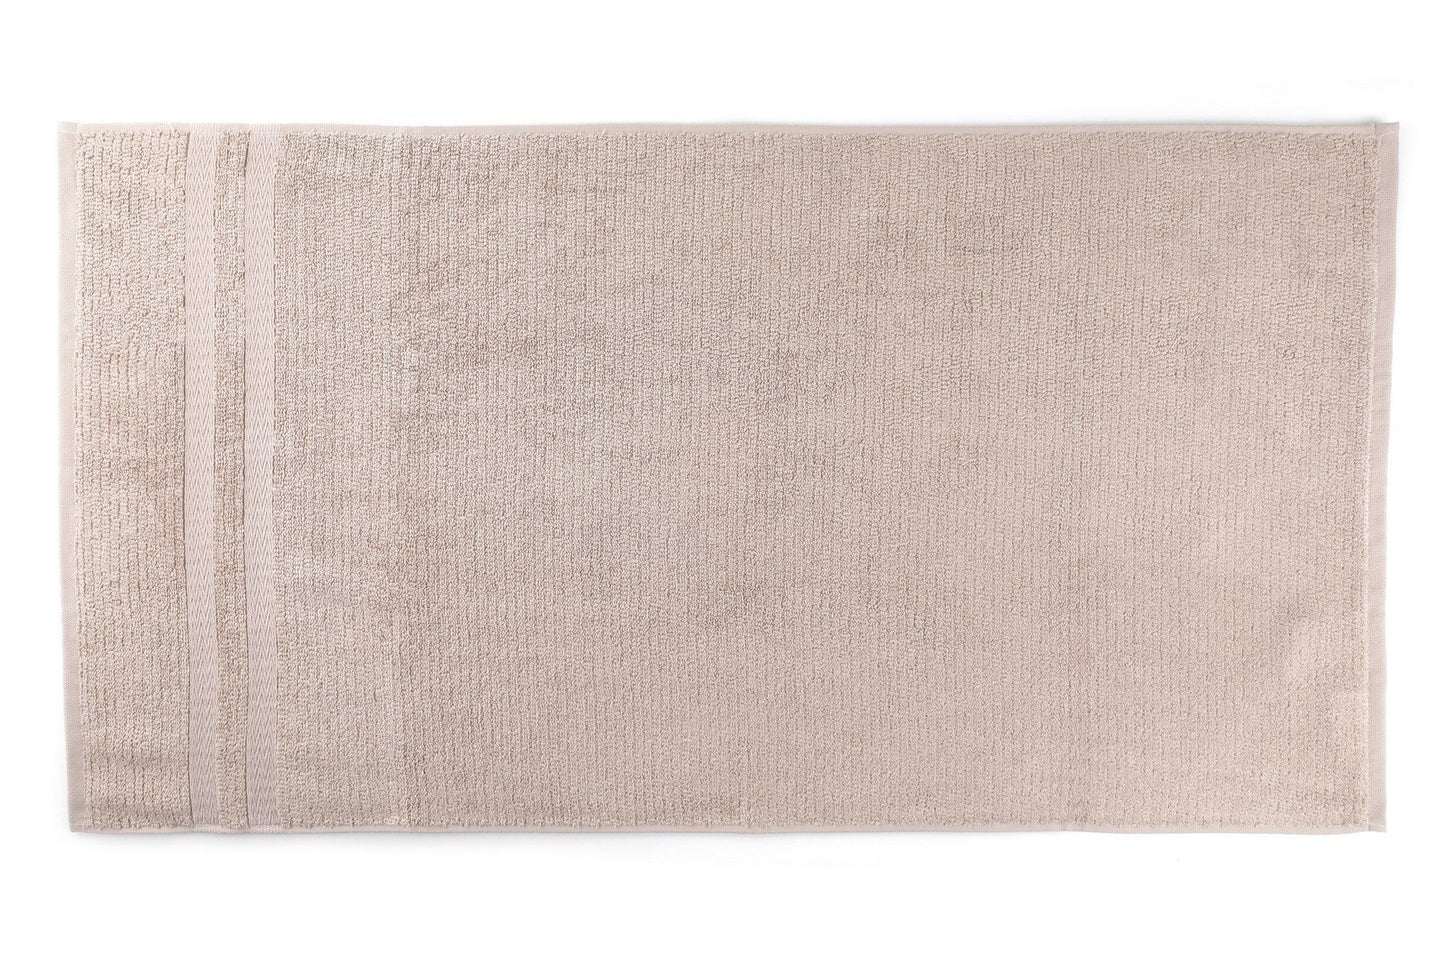 Ayliz - Light Brown - Bath Towel Set (2 Pieces)